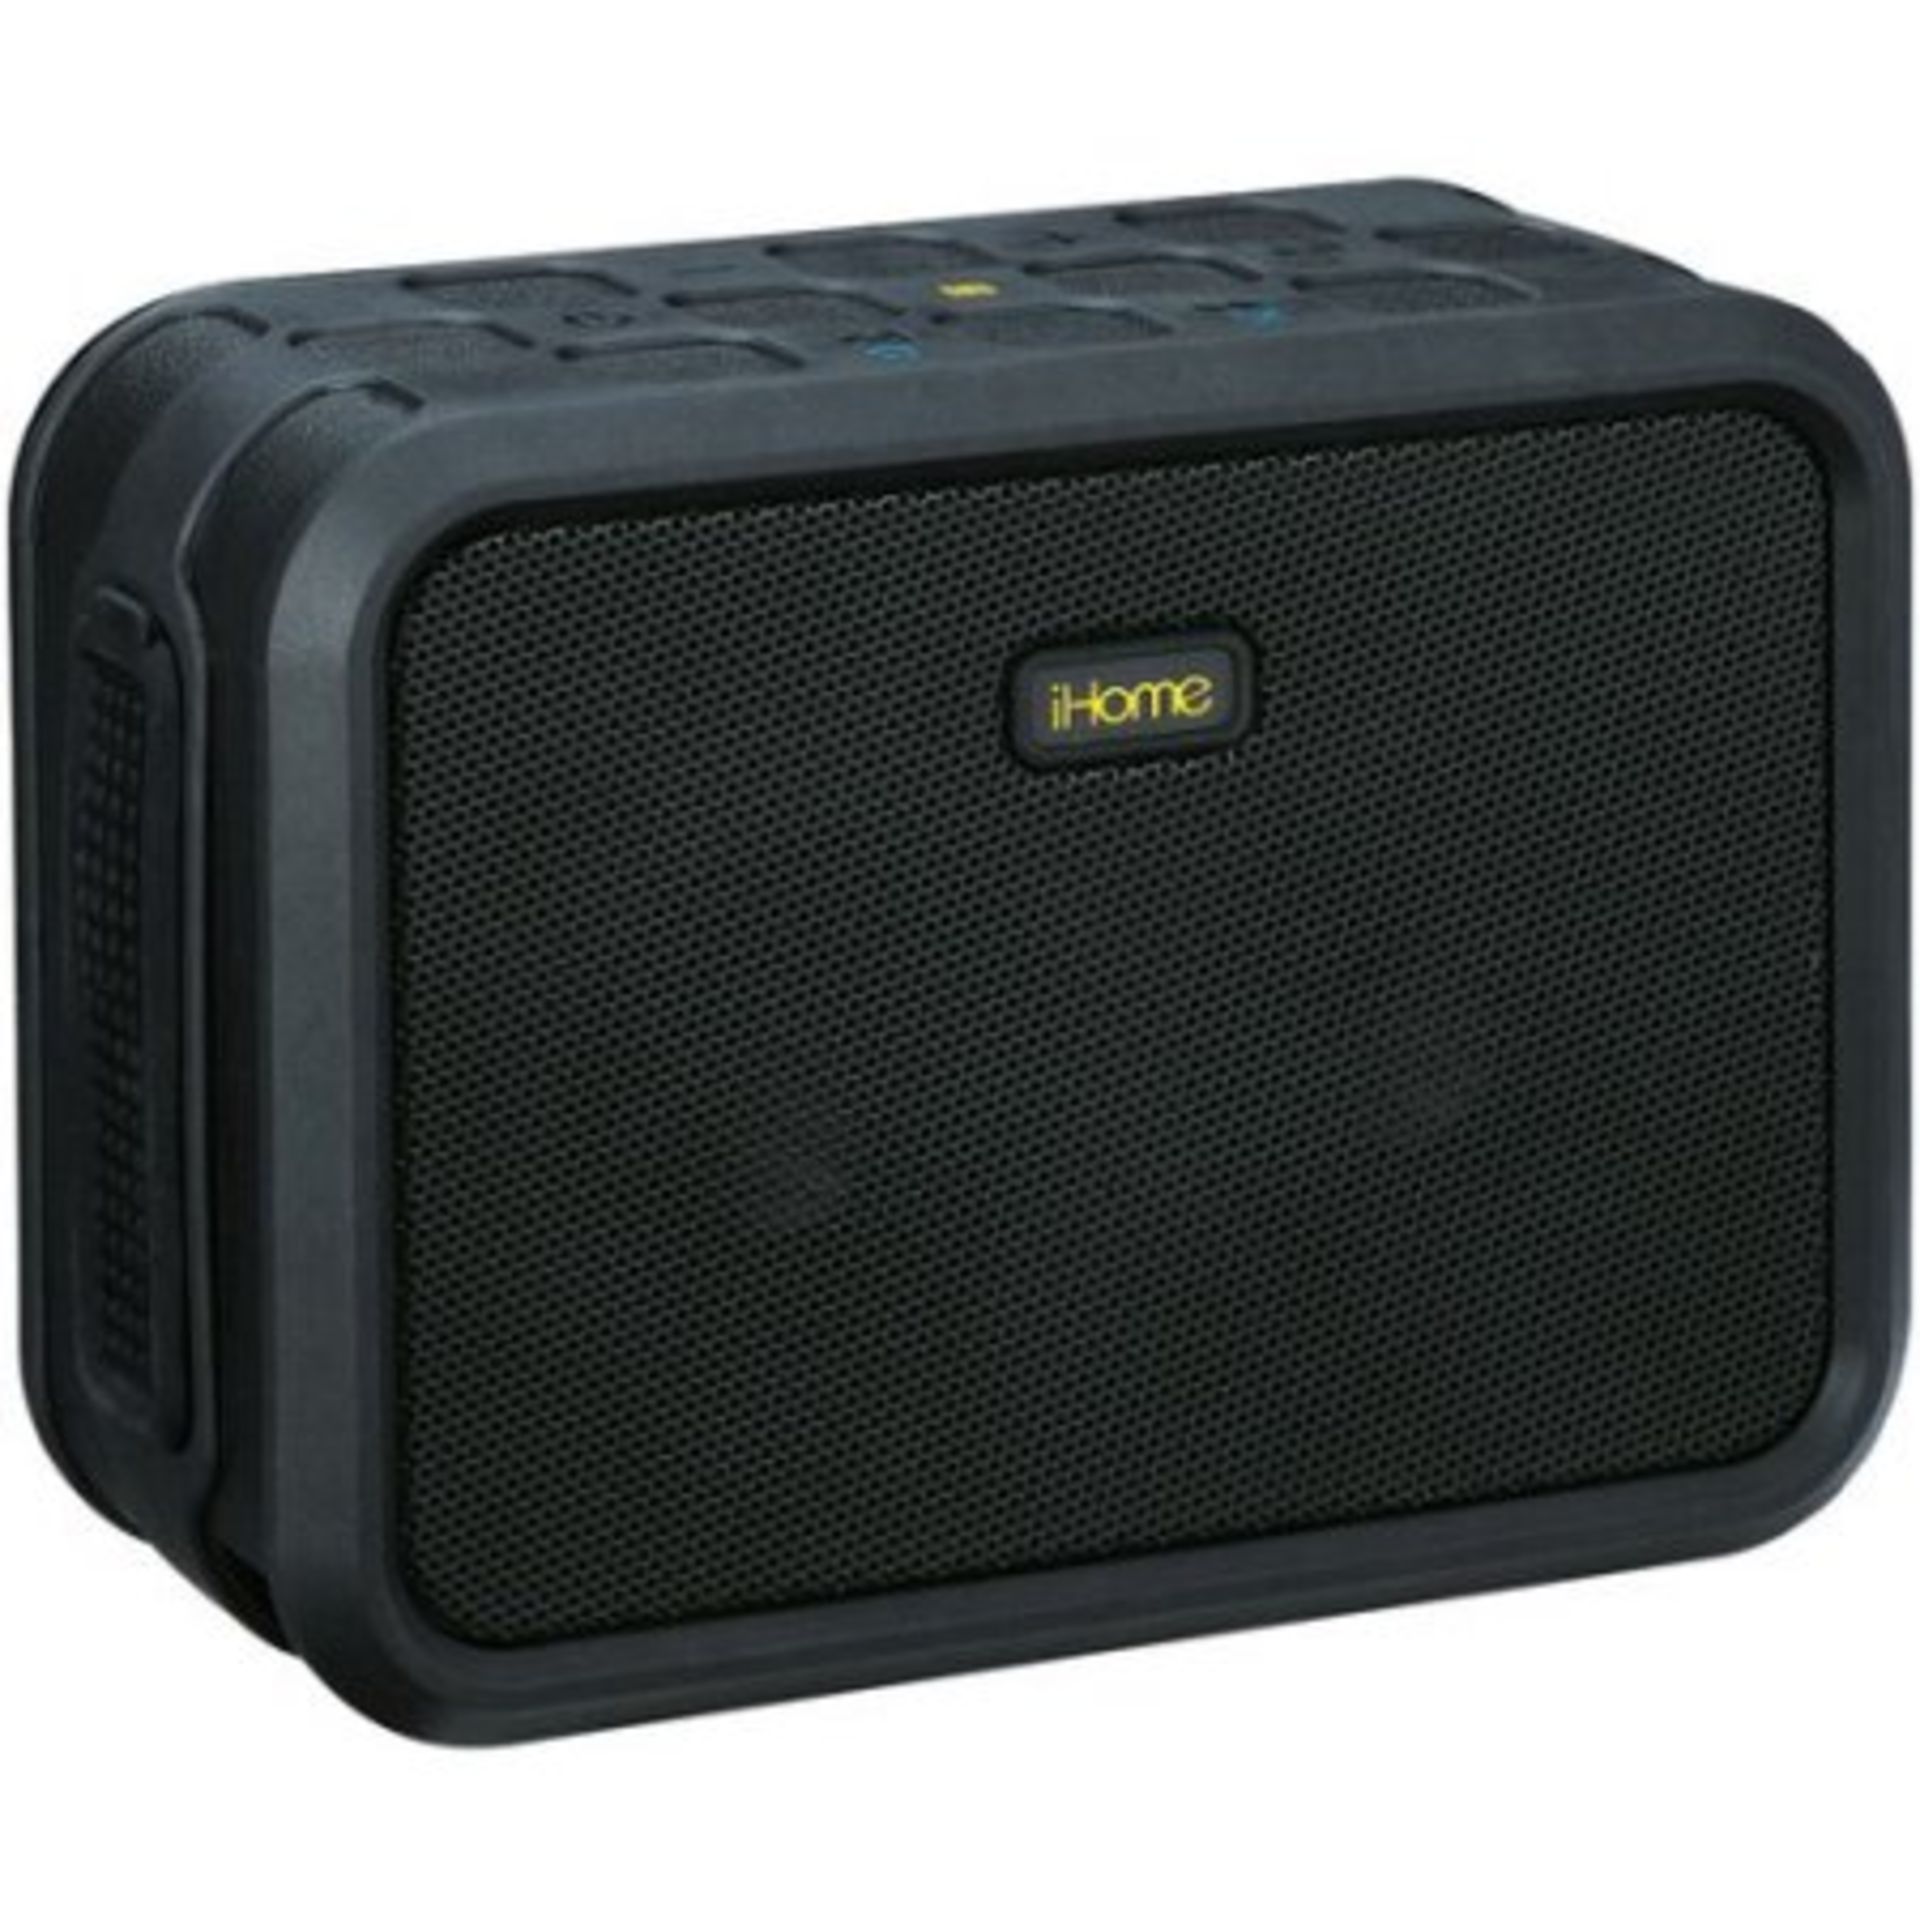 + VAT Brand New iHome Rugged Portable Waterproof Bluetooth Stereo Speaker-IPX7 Waterproof Rating-